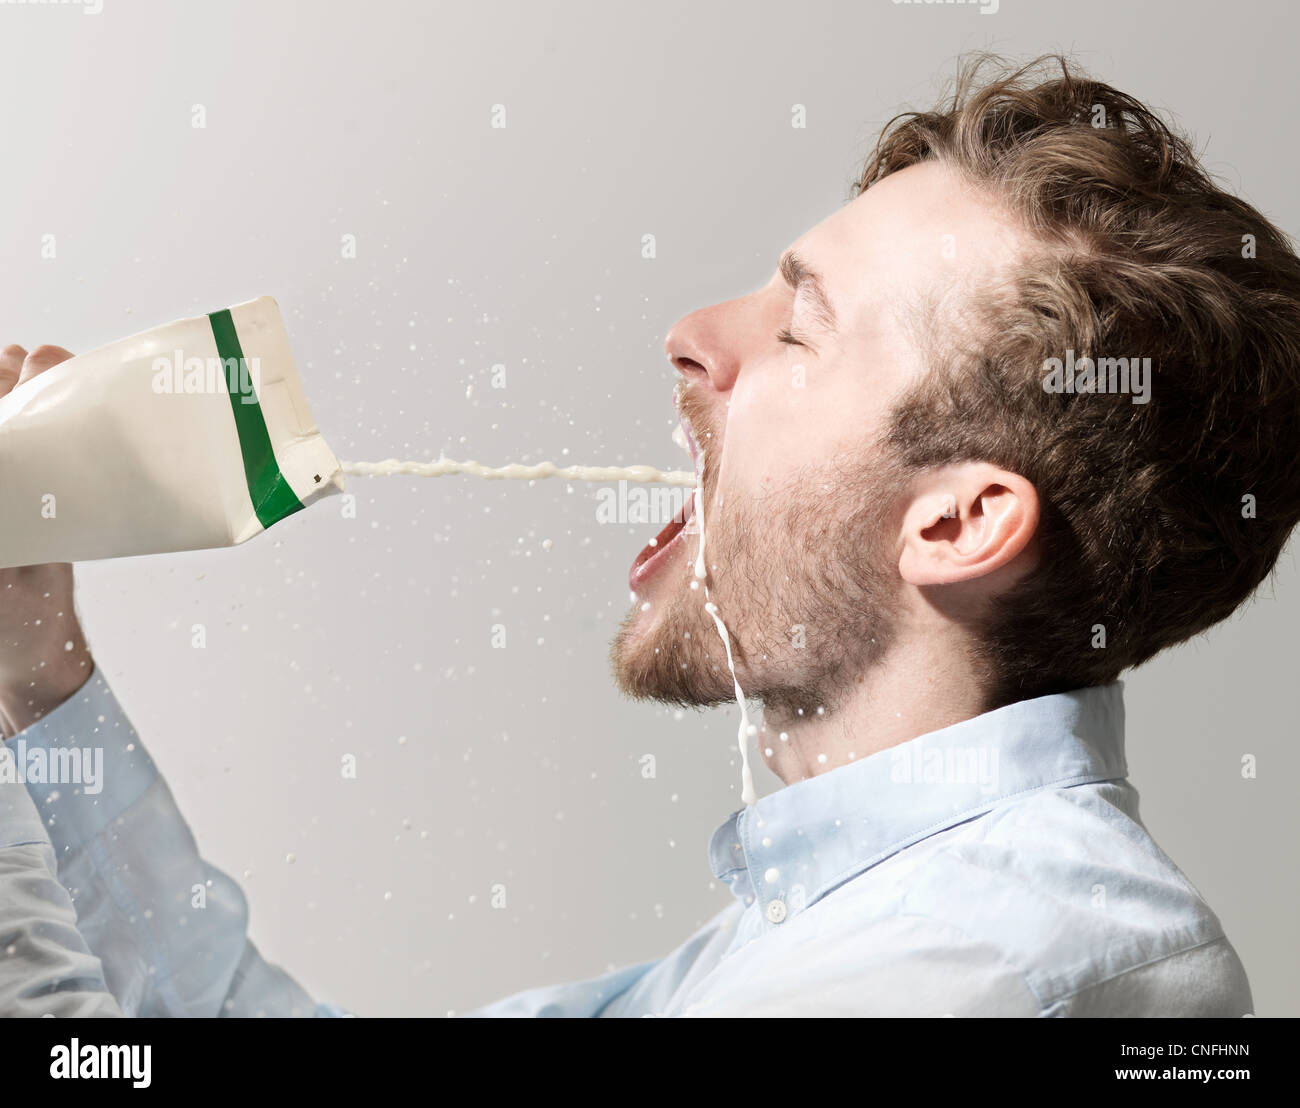 Giovane uomo fuoriuscita di latte dal cartone, studio shot Foto Stock